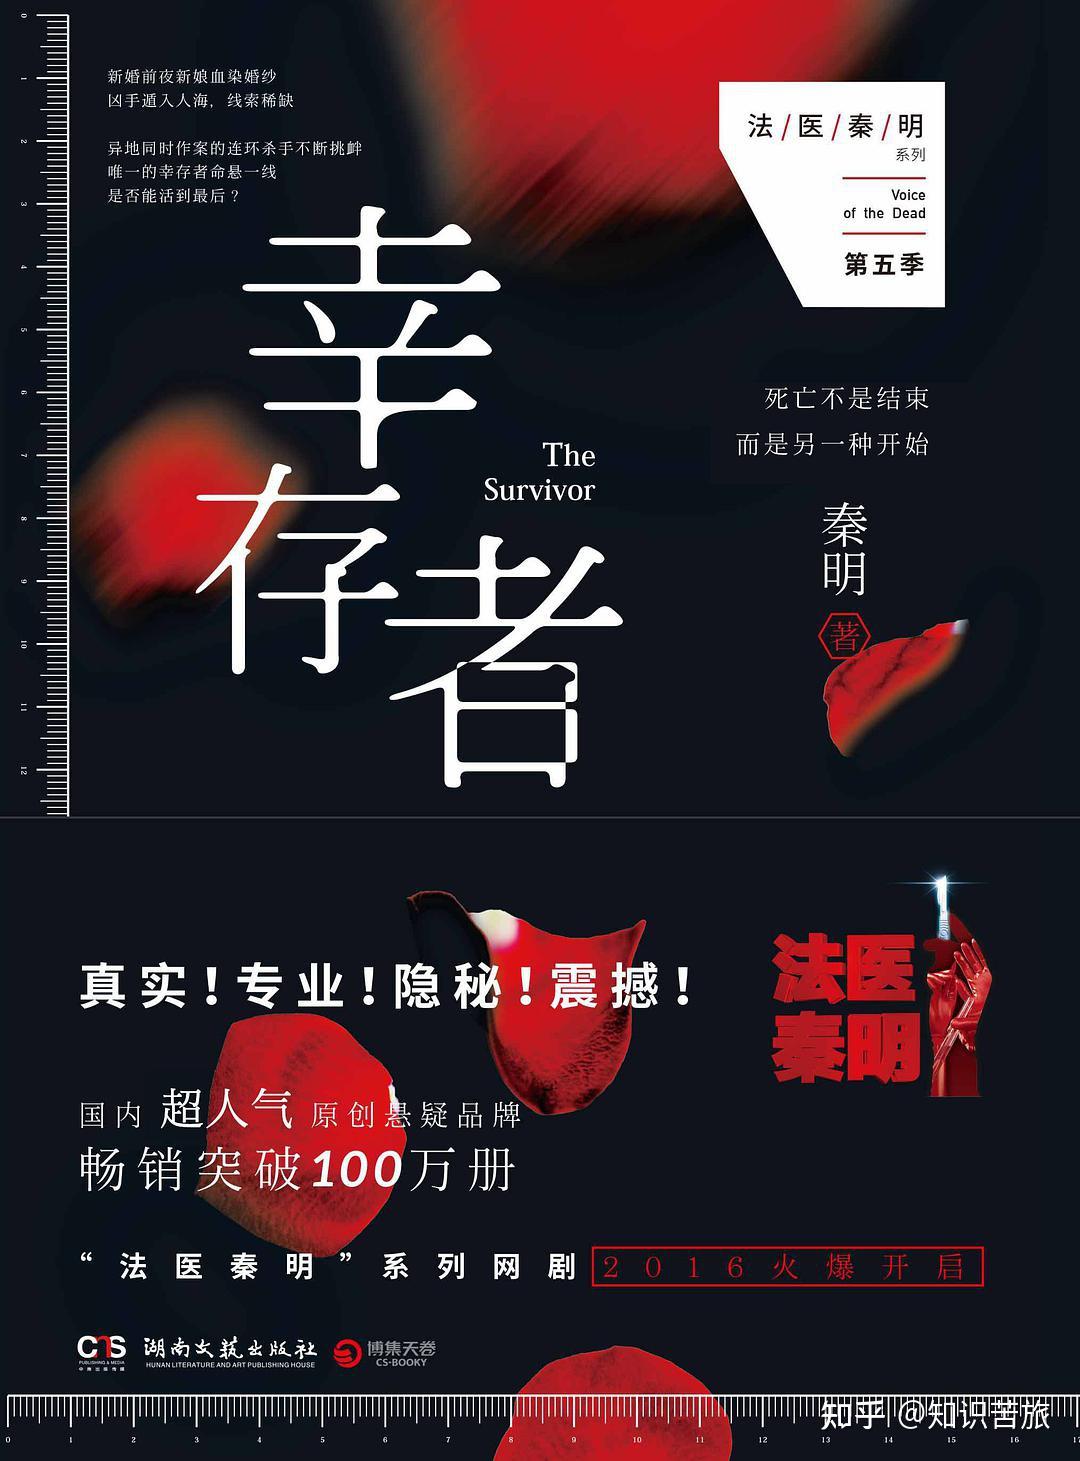 南京大屠杀幸存者照片墙上又熄了一盏灯，目前登记健在南京大屠杀幸存者只有100位|纪念馆|500px_新浪新闻